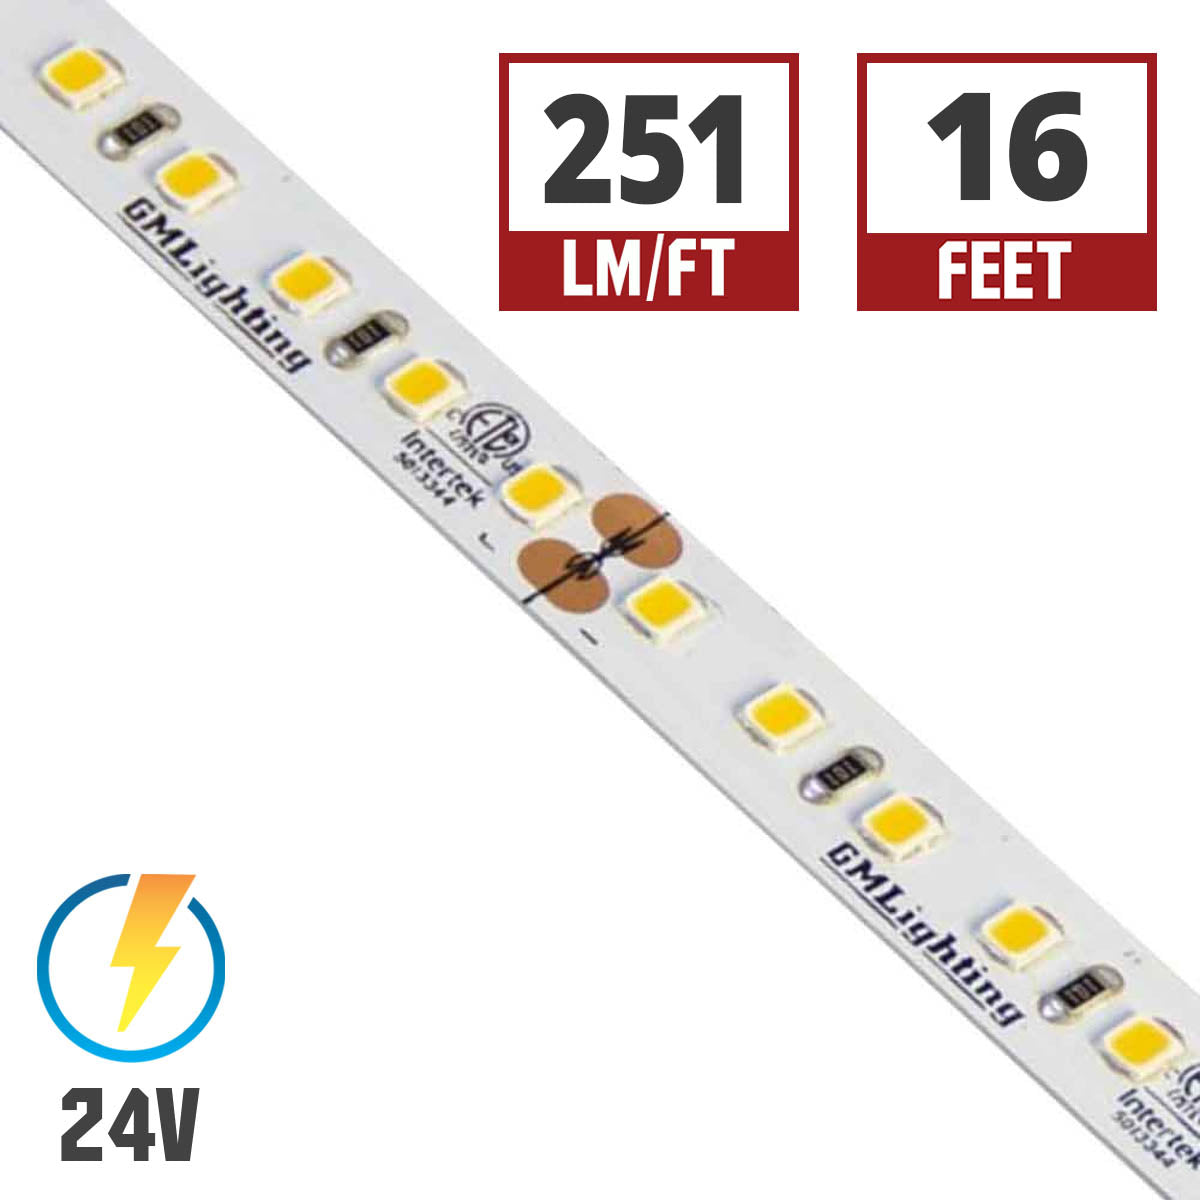 LTR-P Pro LED Strip Light, 3.0W / ft, 240 Lumens per Ft, 24V